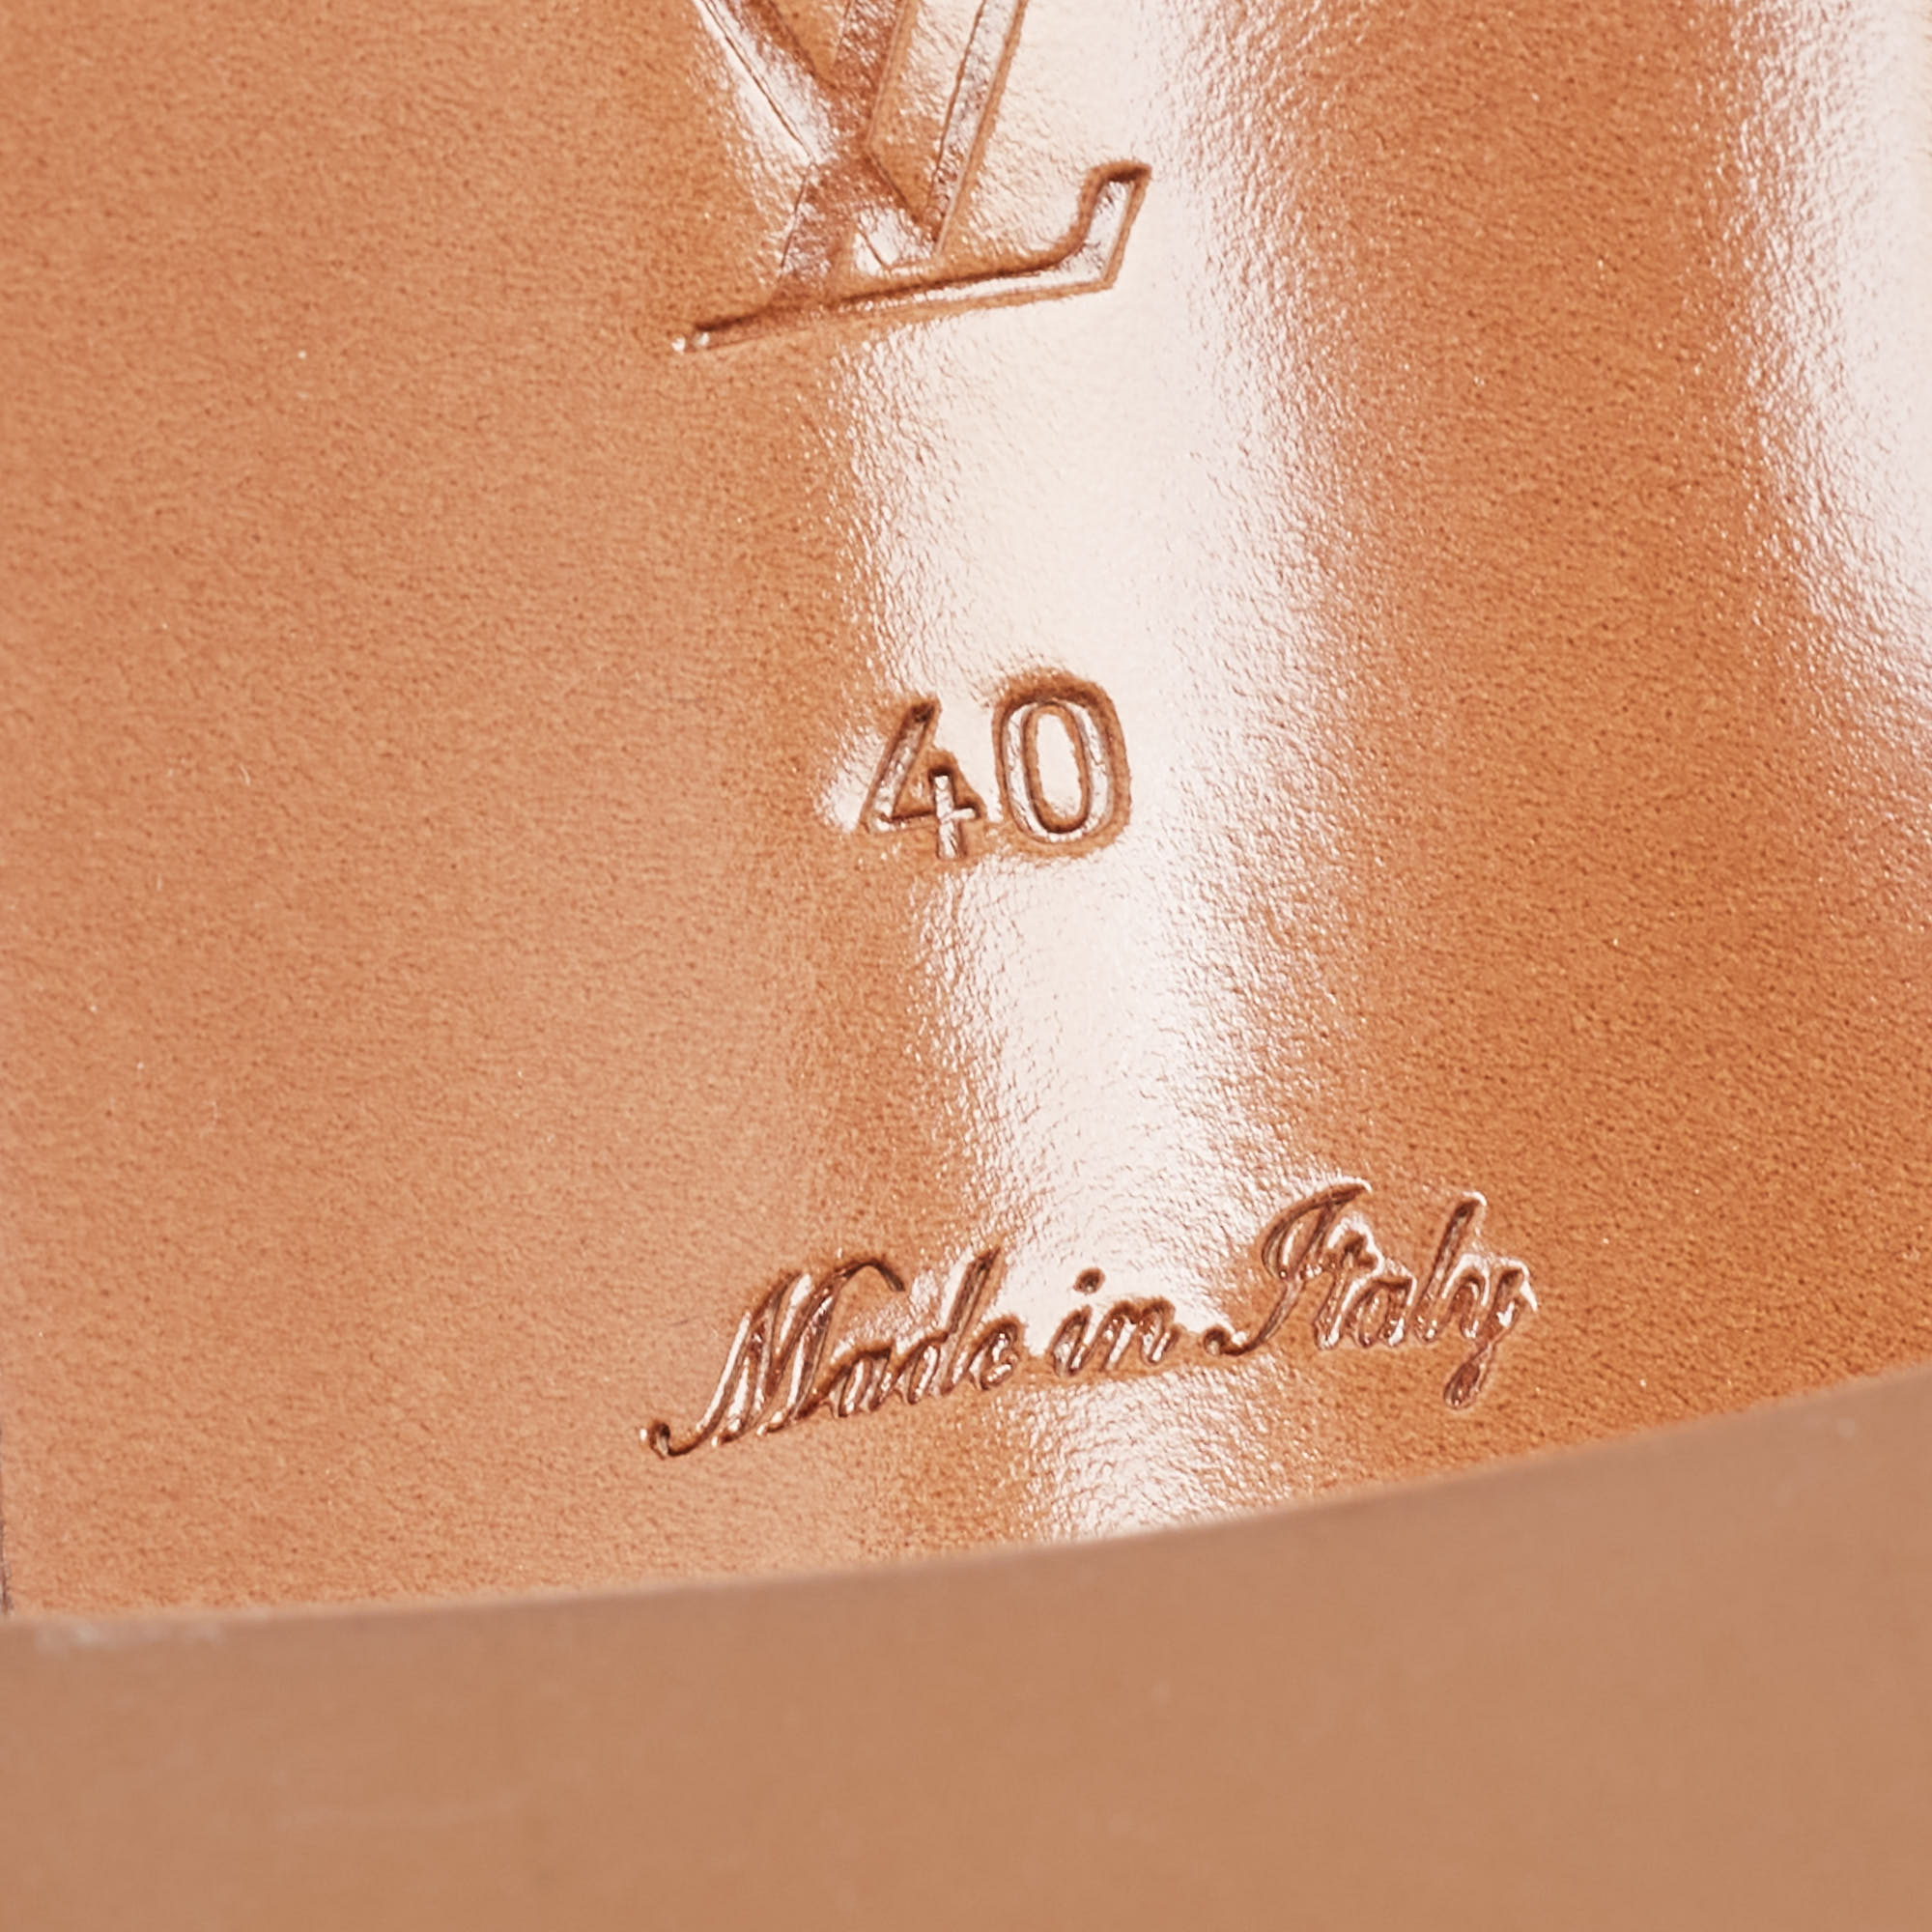 Louis Vuitton Amarante Patent Leather Lock It Sandals Size 40